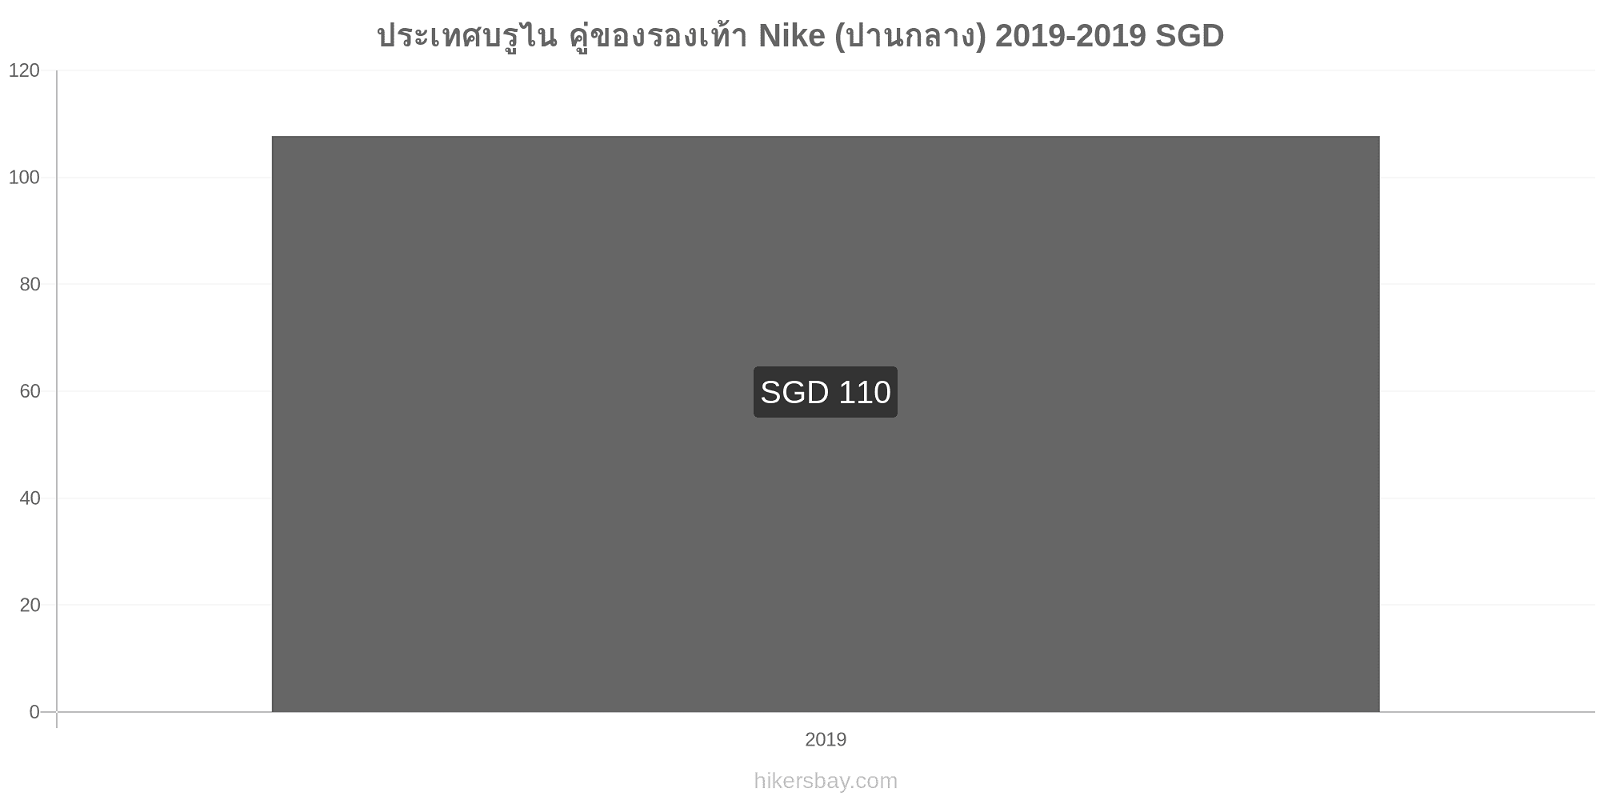 ประเทศบรูไน การเปลี่ยนแปลงราคา คู่ของรองเท้า Nike (ปานกลาง) hikersbay.com